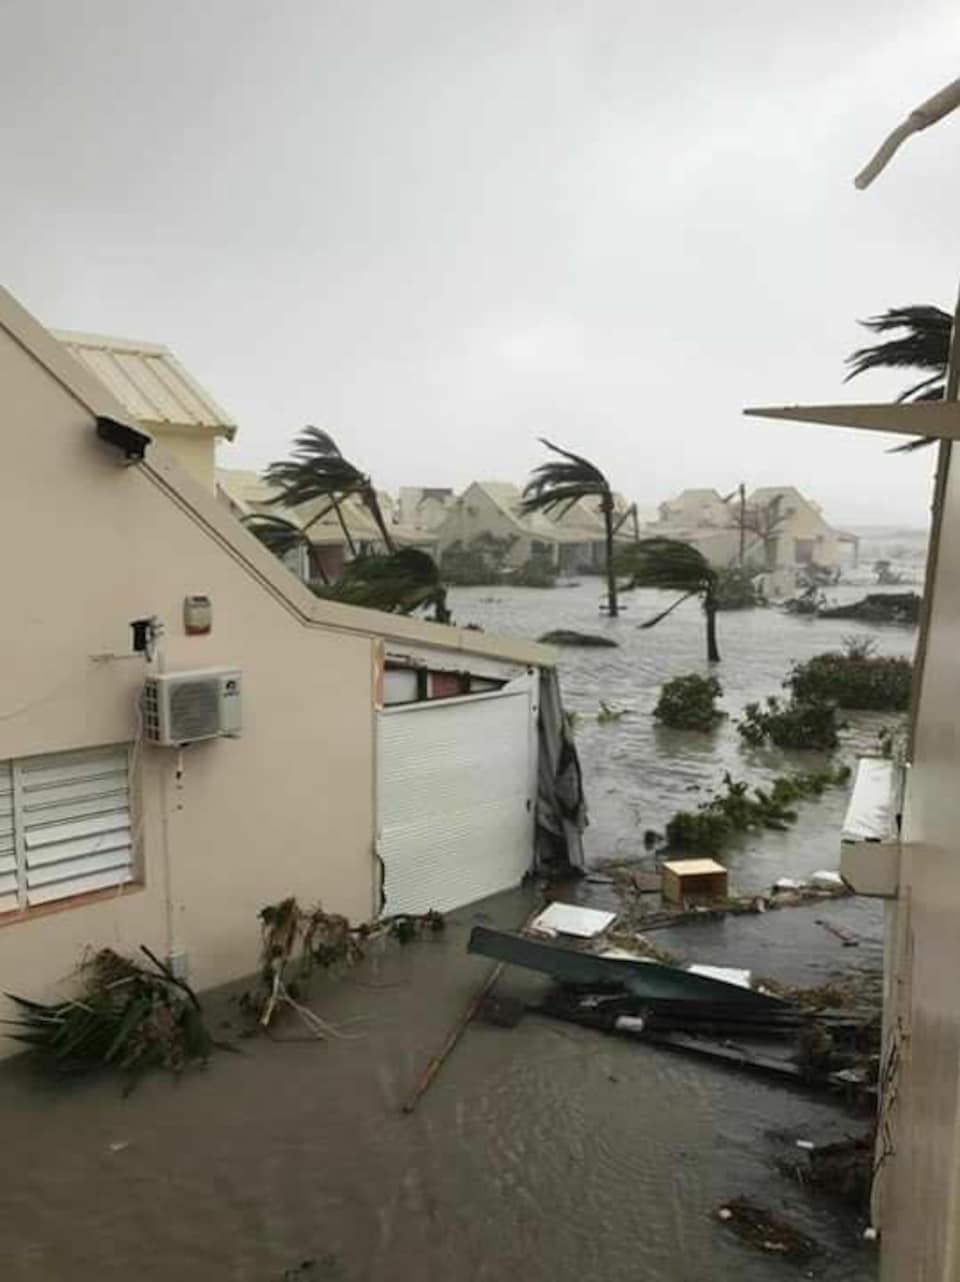 Un quartier de l'île de Saint-Martin est envahi par les eaux et les débris, tandis que le vent souffle durement sur les palmiers.